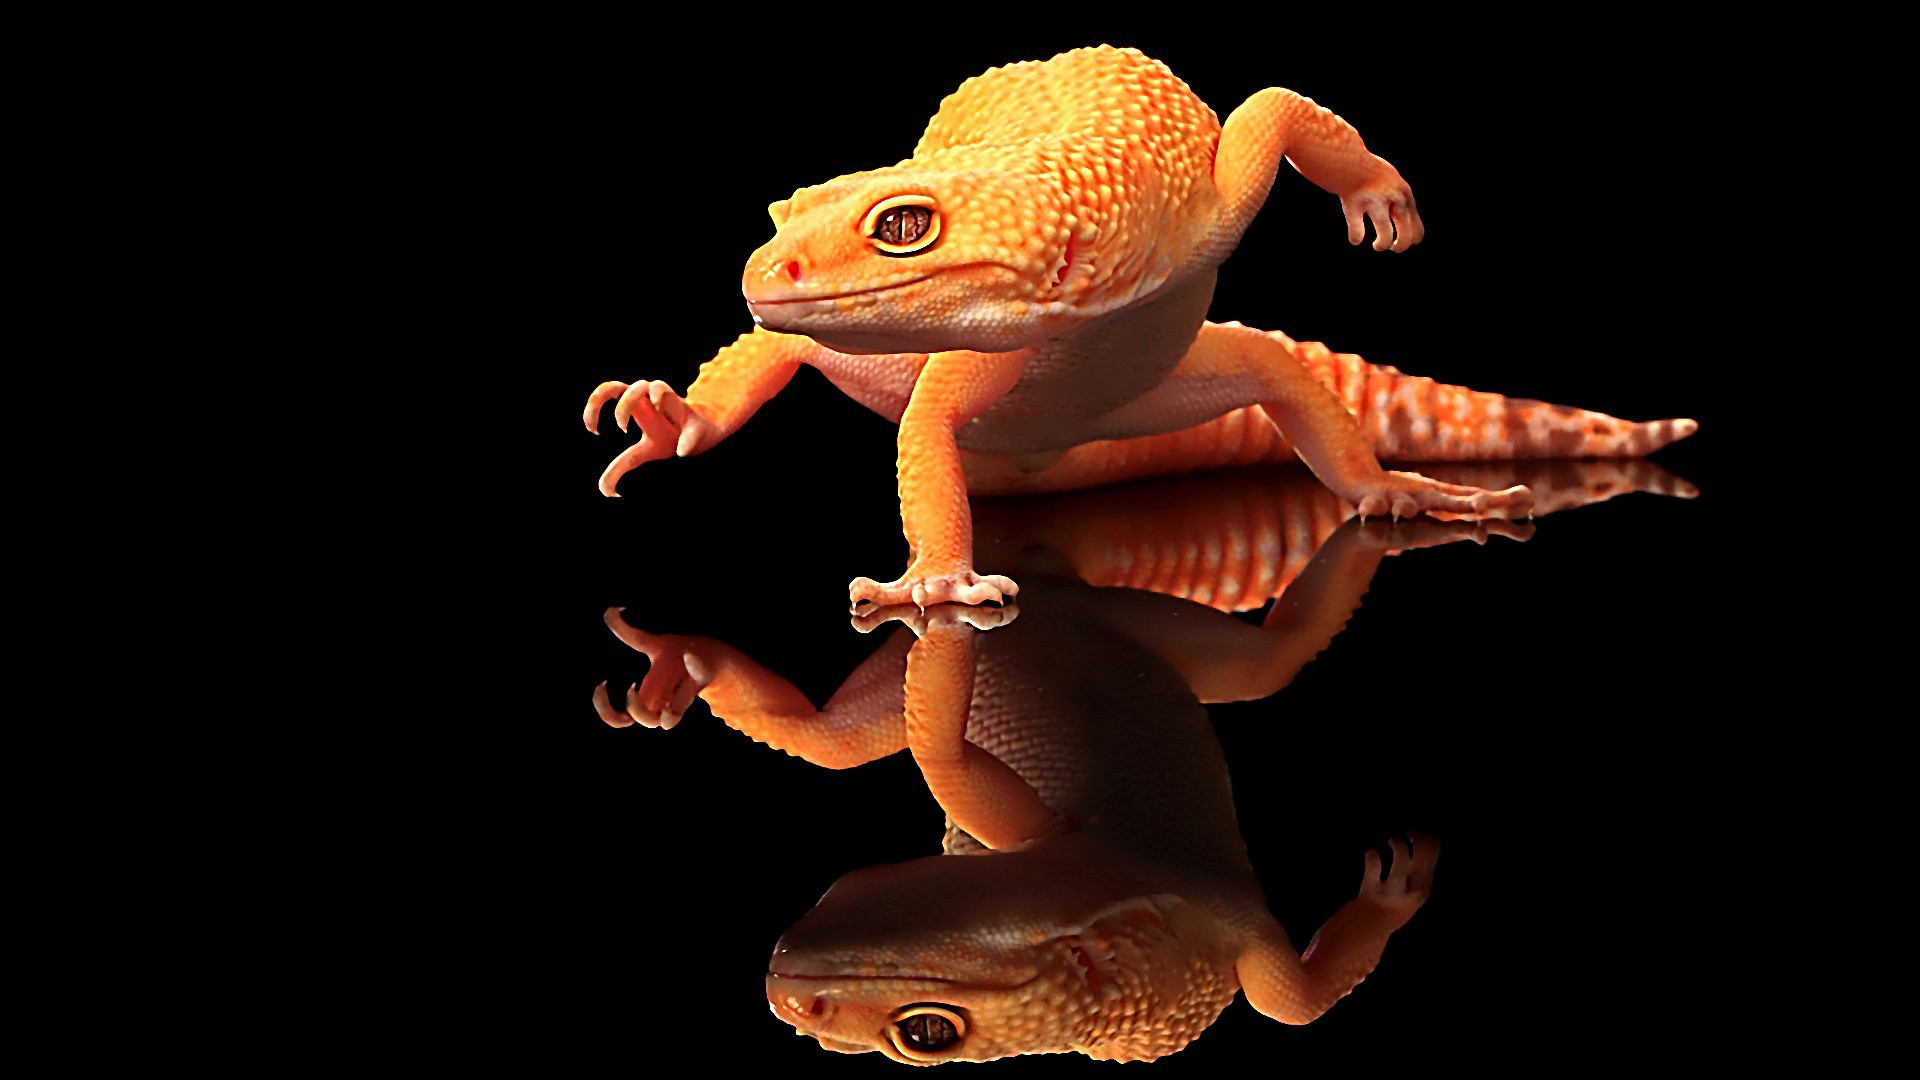 Agama lizard Wallpaper 4k Ultra HD ID9869